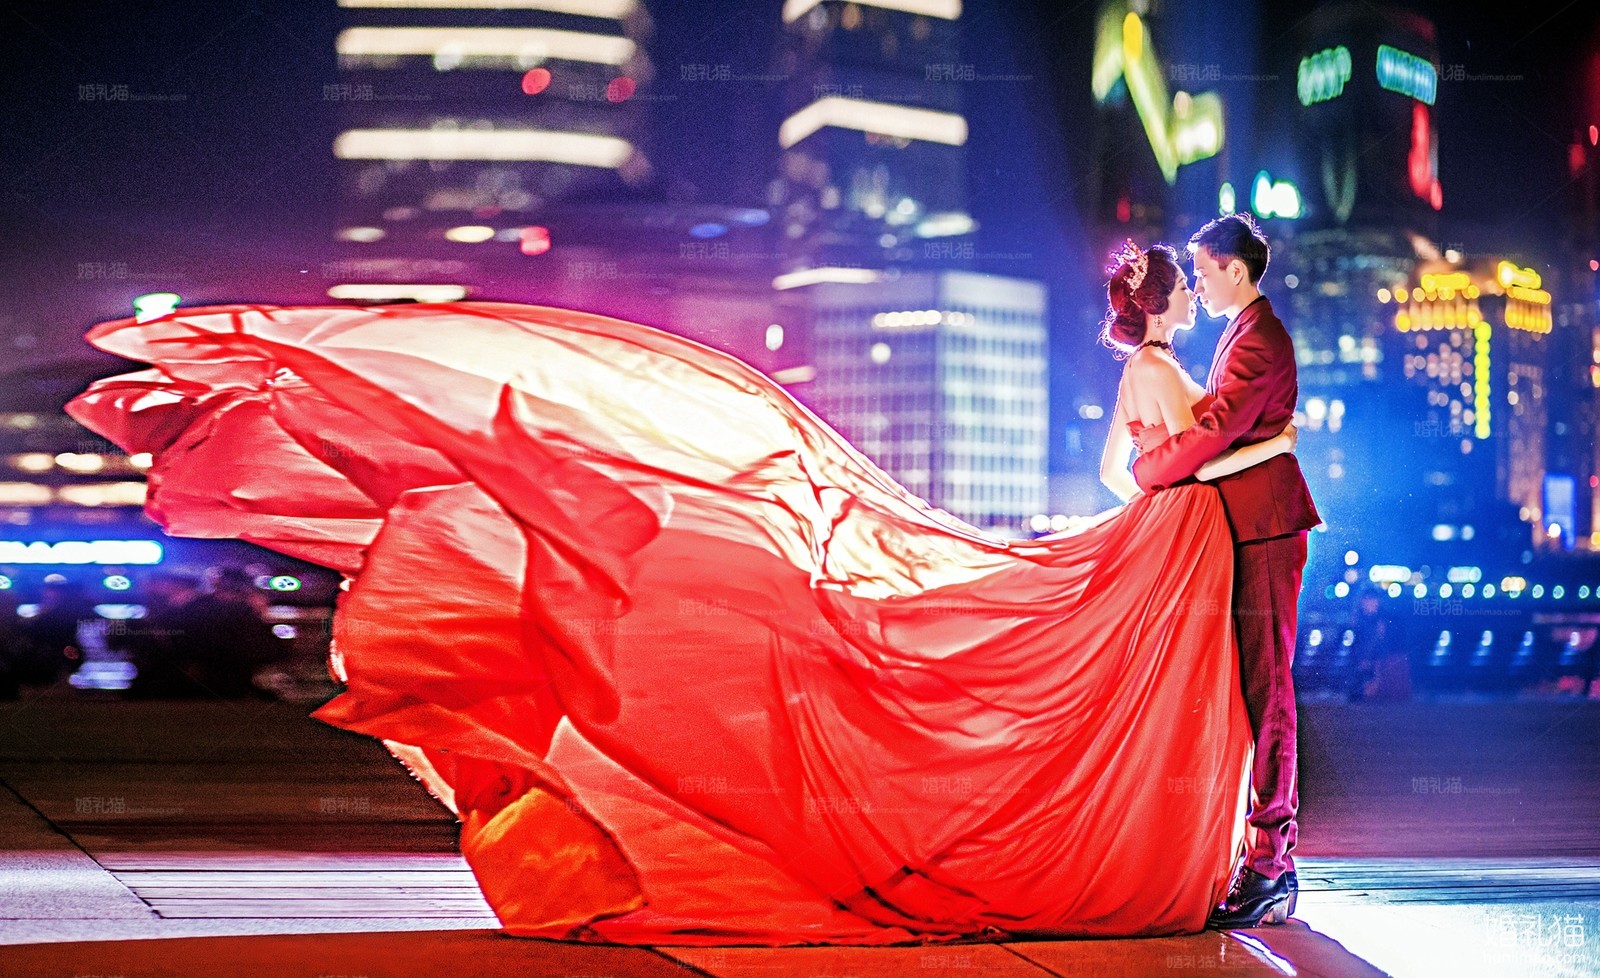 街拍结婚照|夜景婚纱照图片,[夜景, 街拍],上海婚纱照,婚纱照图片